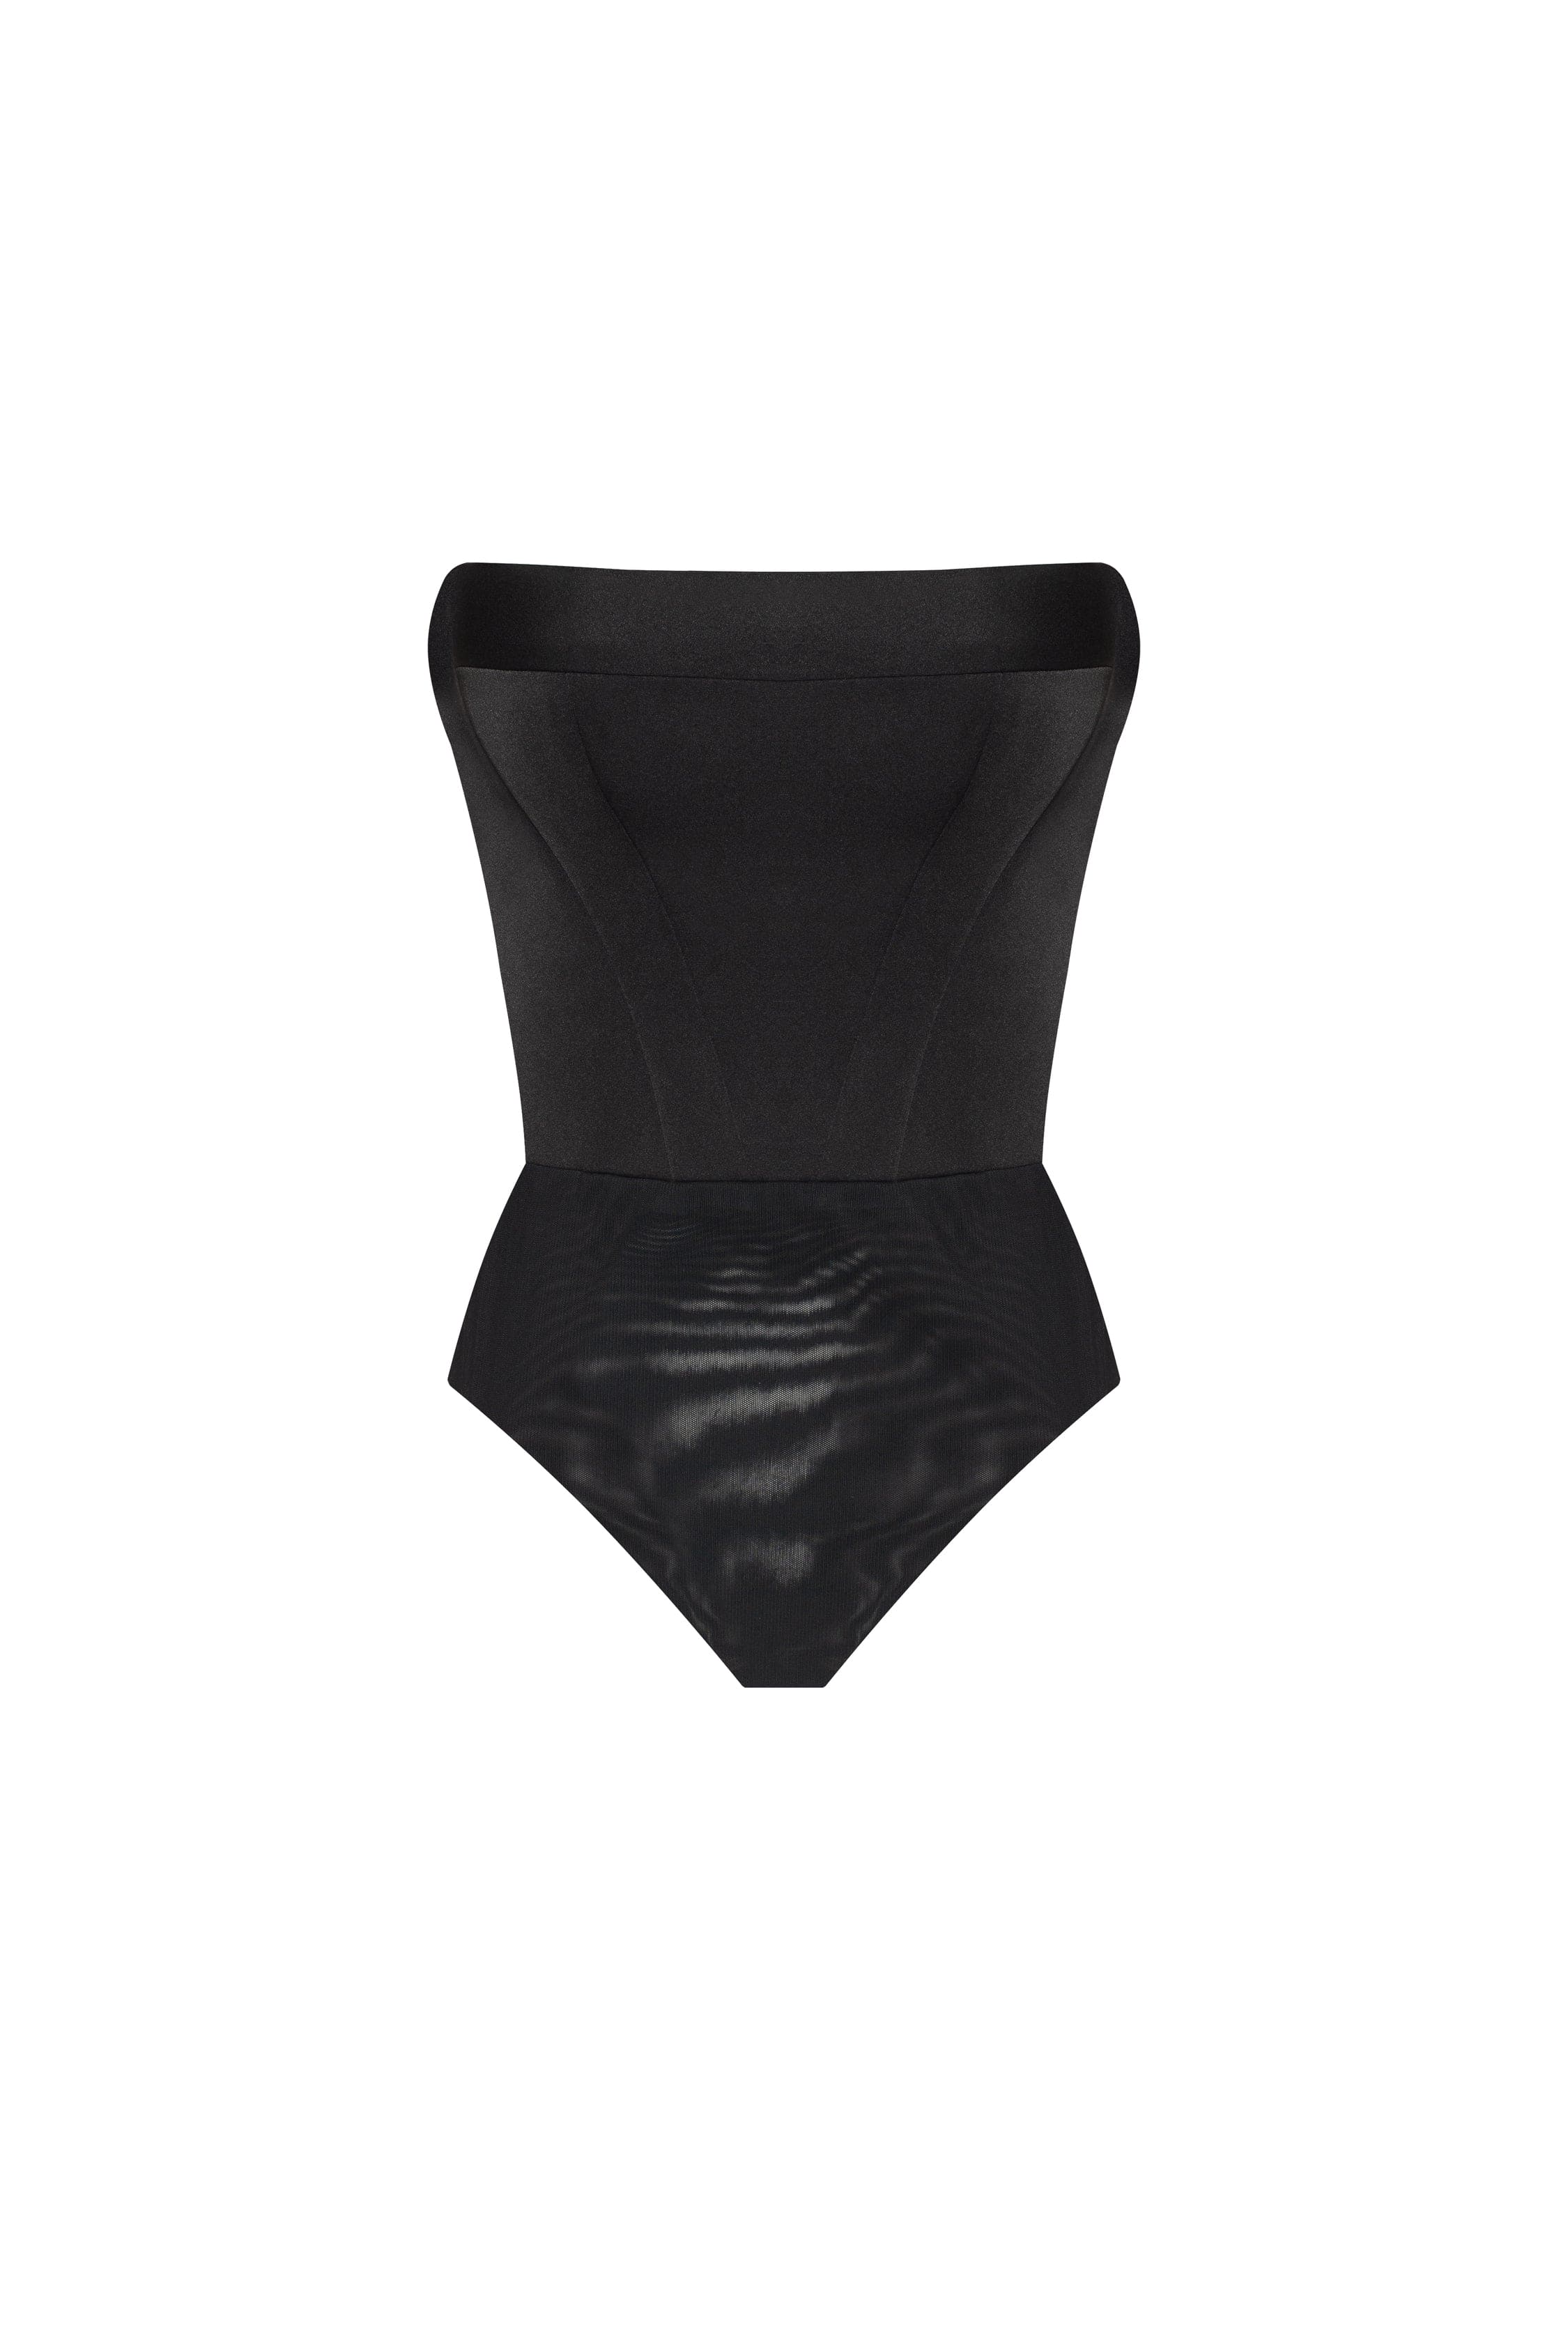 Bodacious Bodysuit, Women's Black Bodysuits – CityLux Boutique